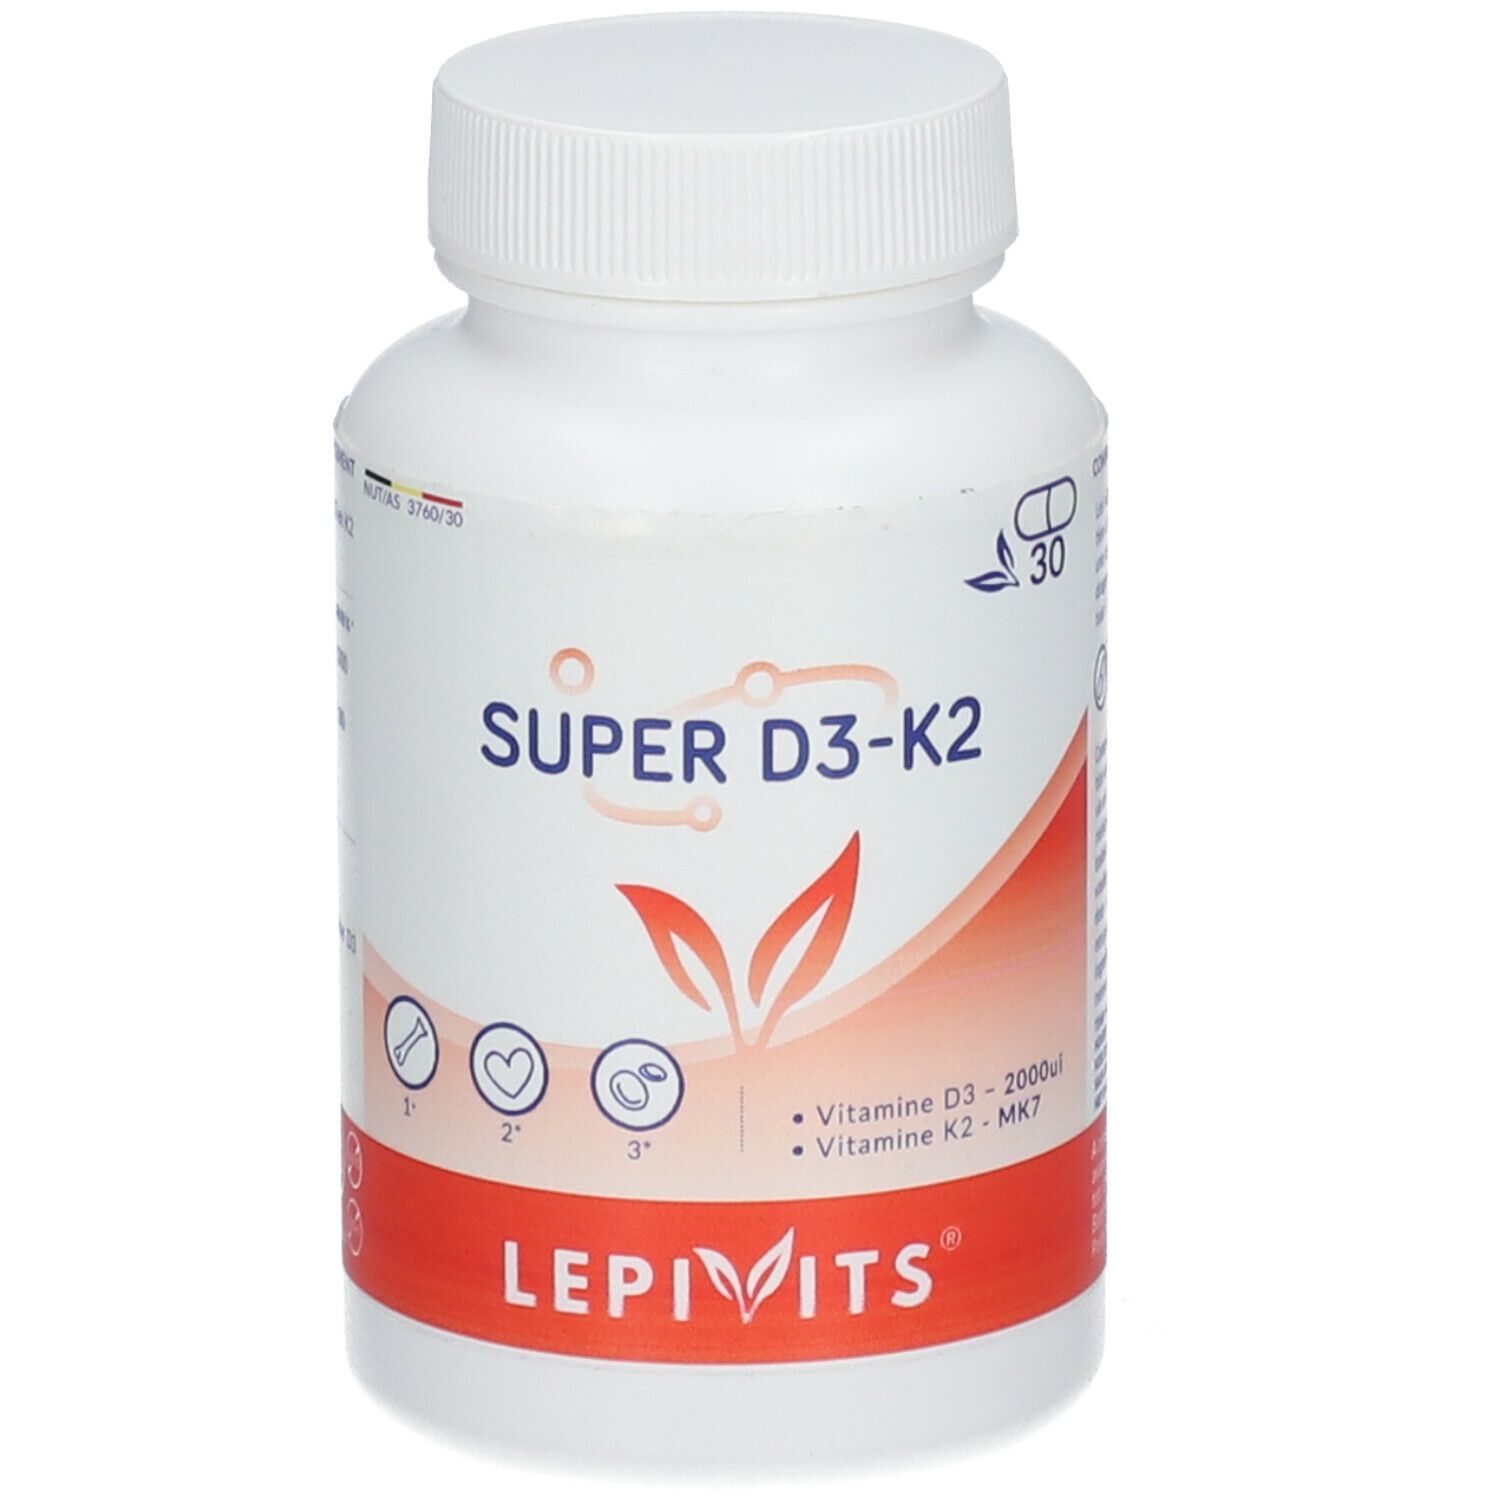 LepiVits® Super D3 + K2